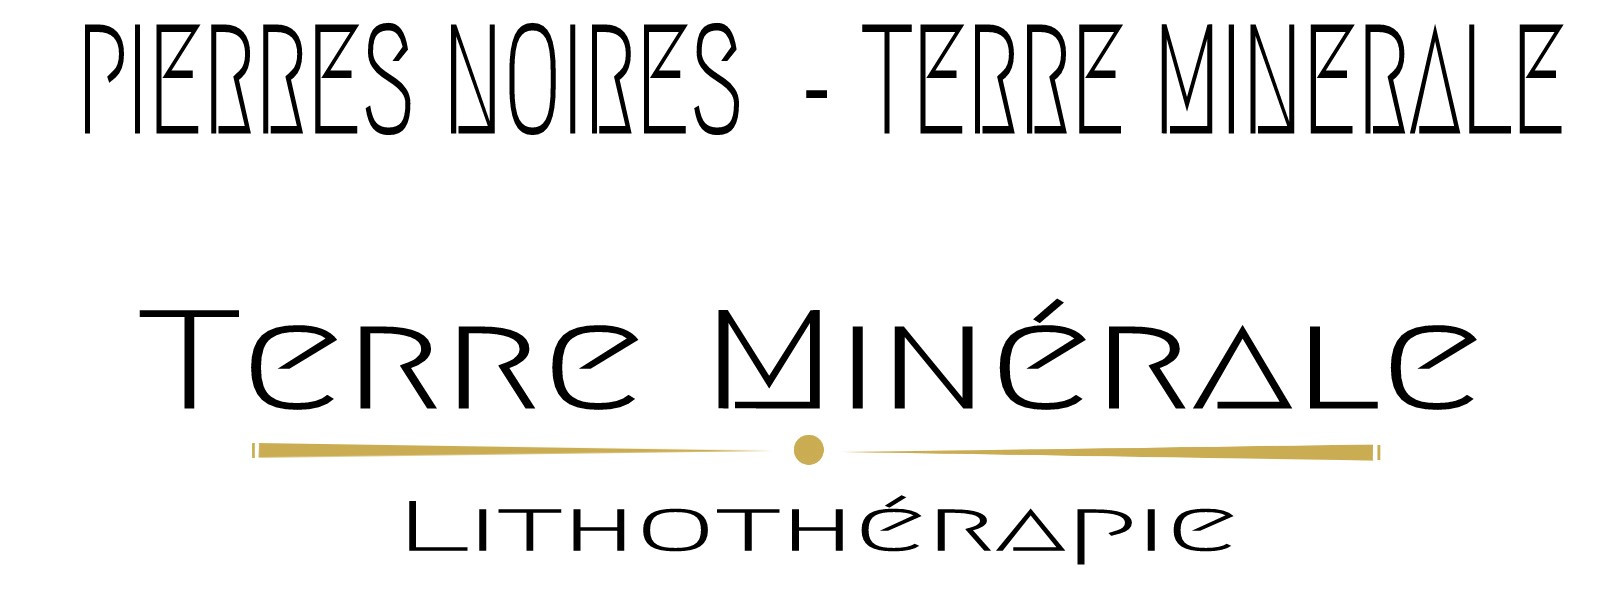 PIERRES NOIRES  - TERRE MINERALE